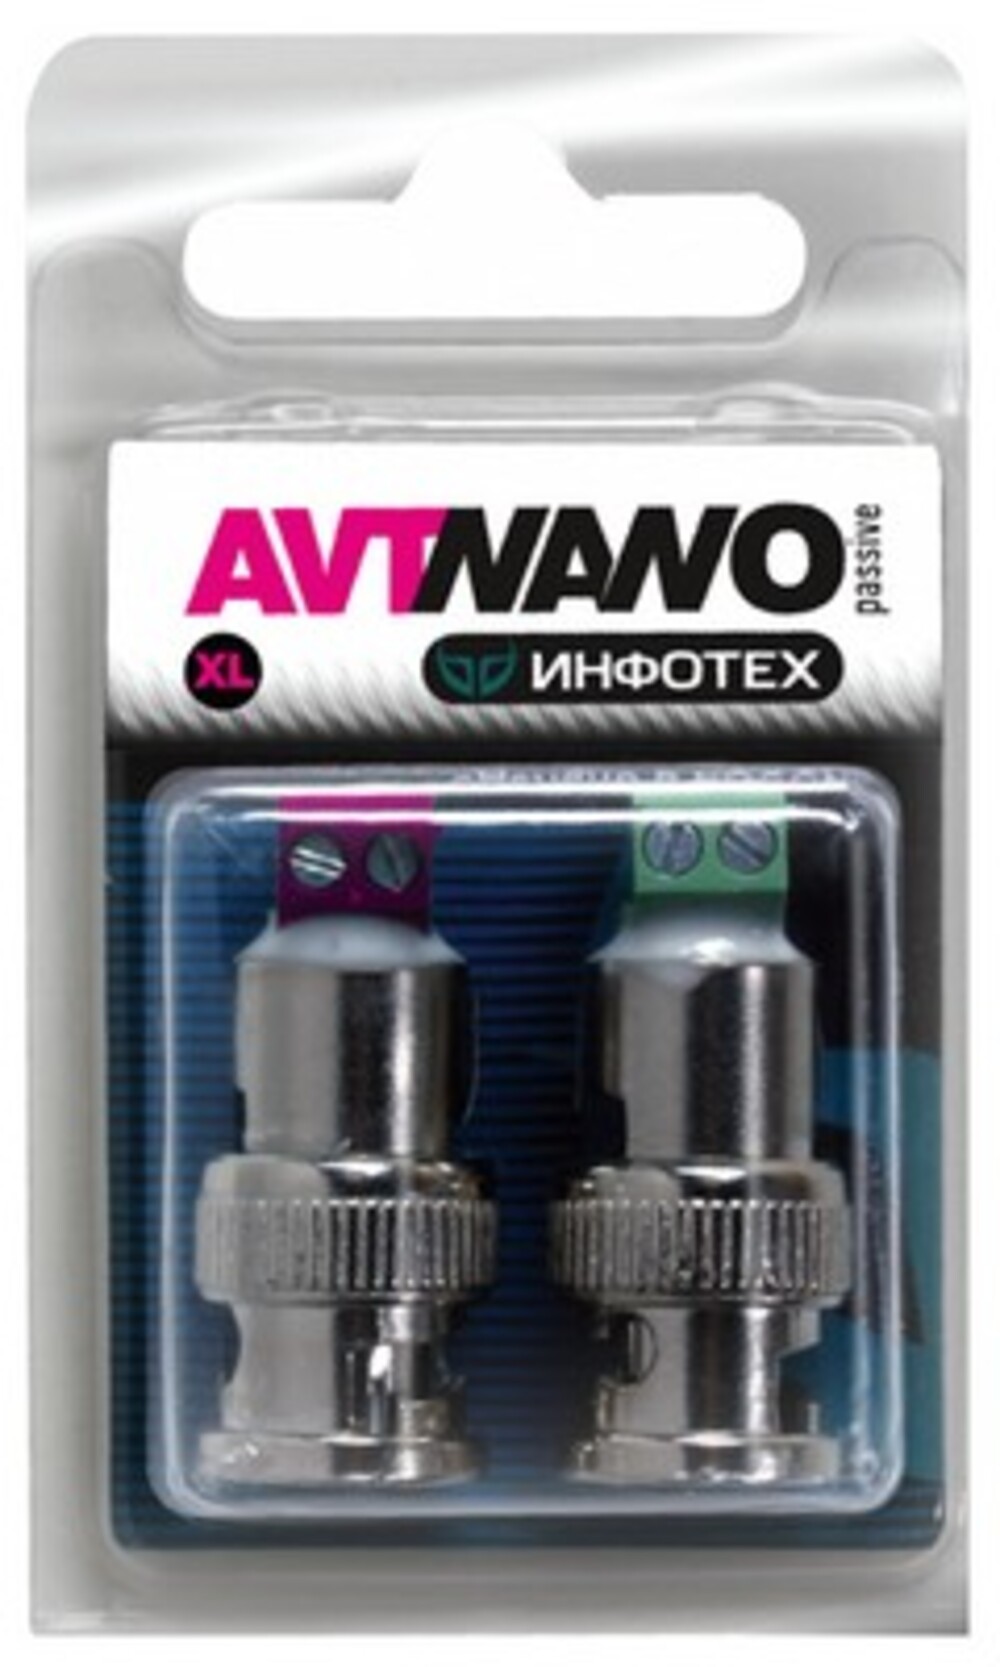 AVT-Nano Passive XL,      AHD/TVI/CVI     500